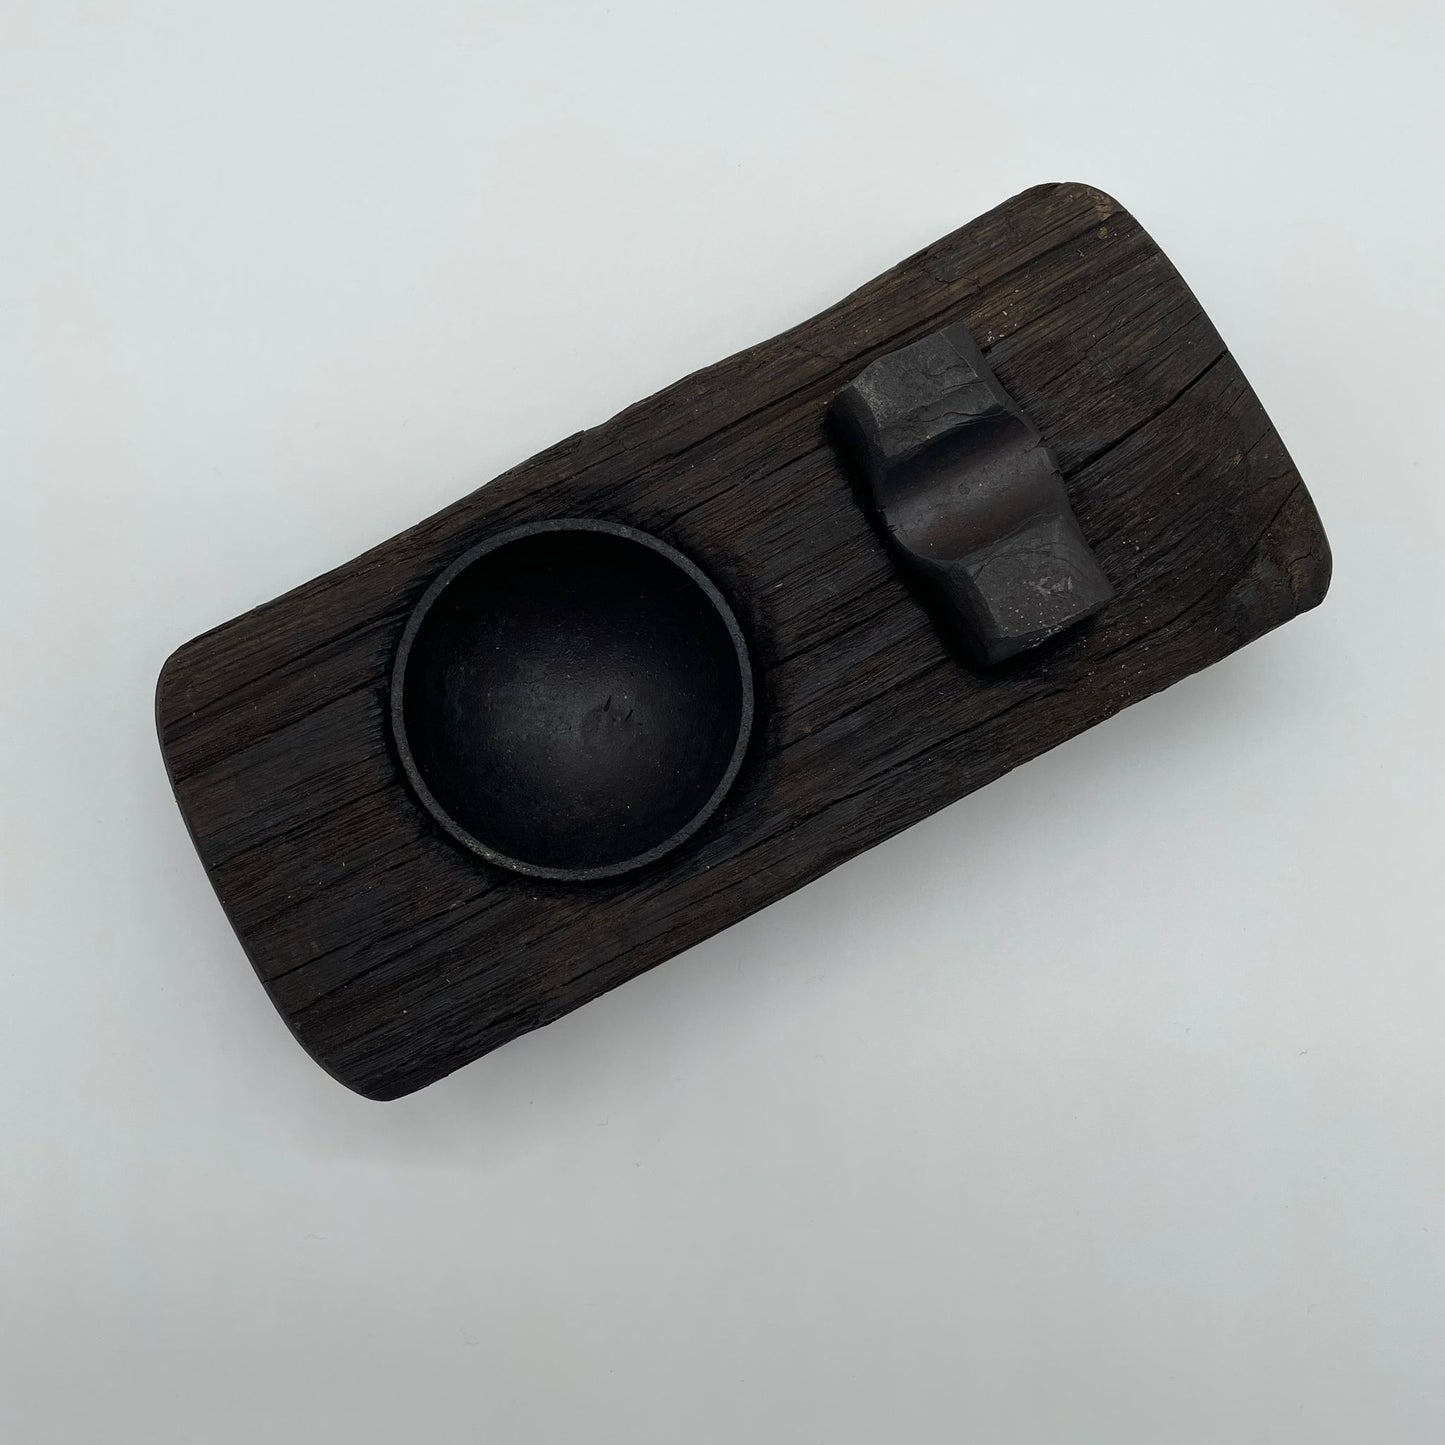 
                  
                    Zigarren Aschenbecher, handgefertigtes Unikat vom Künstler aus Holz und Stahl
                  
                